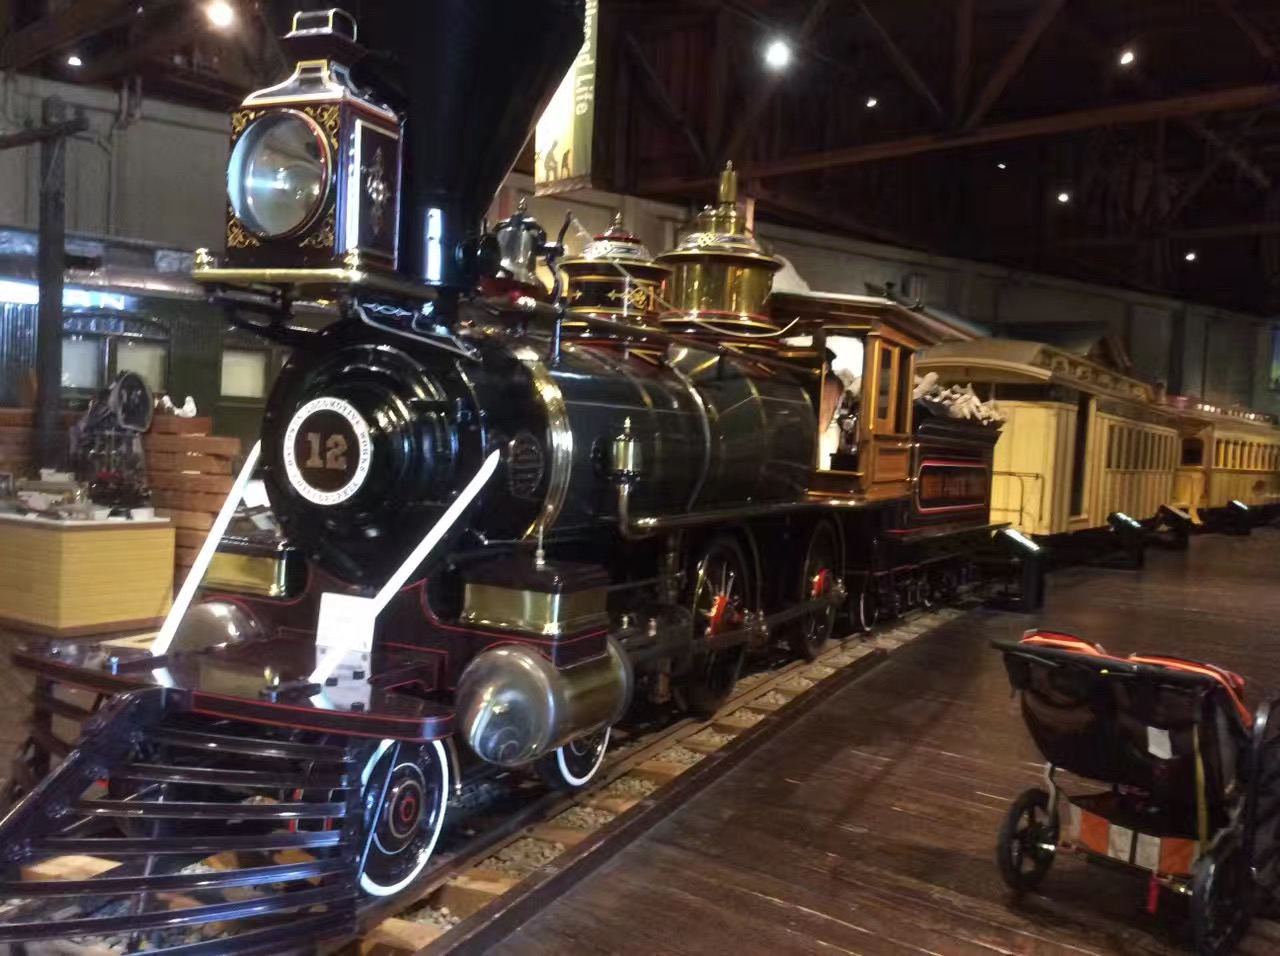 座标，加州。见识一下米囯的古董火车头，有些已有一个半世纪之久，而最早期的竟然是靠燃烧木块产生蒸汽来驱